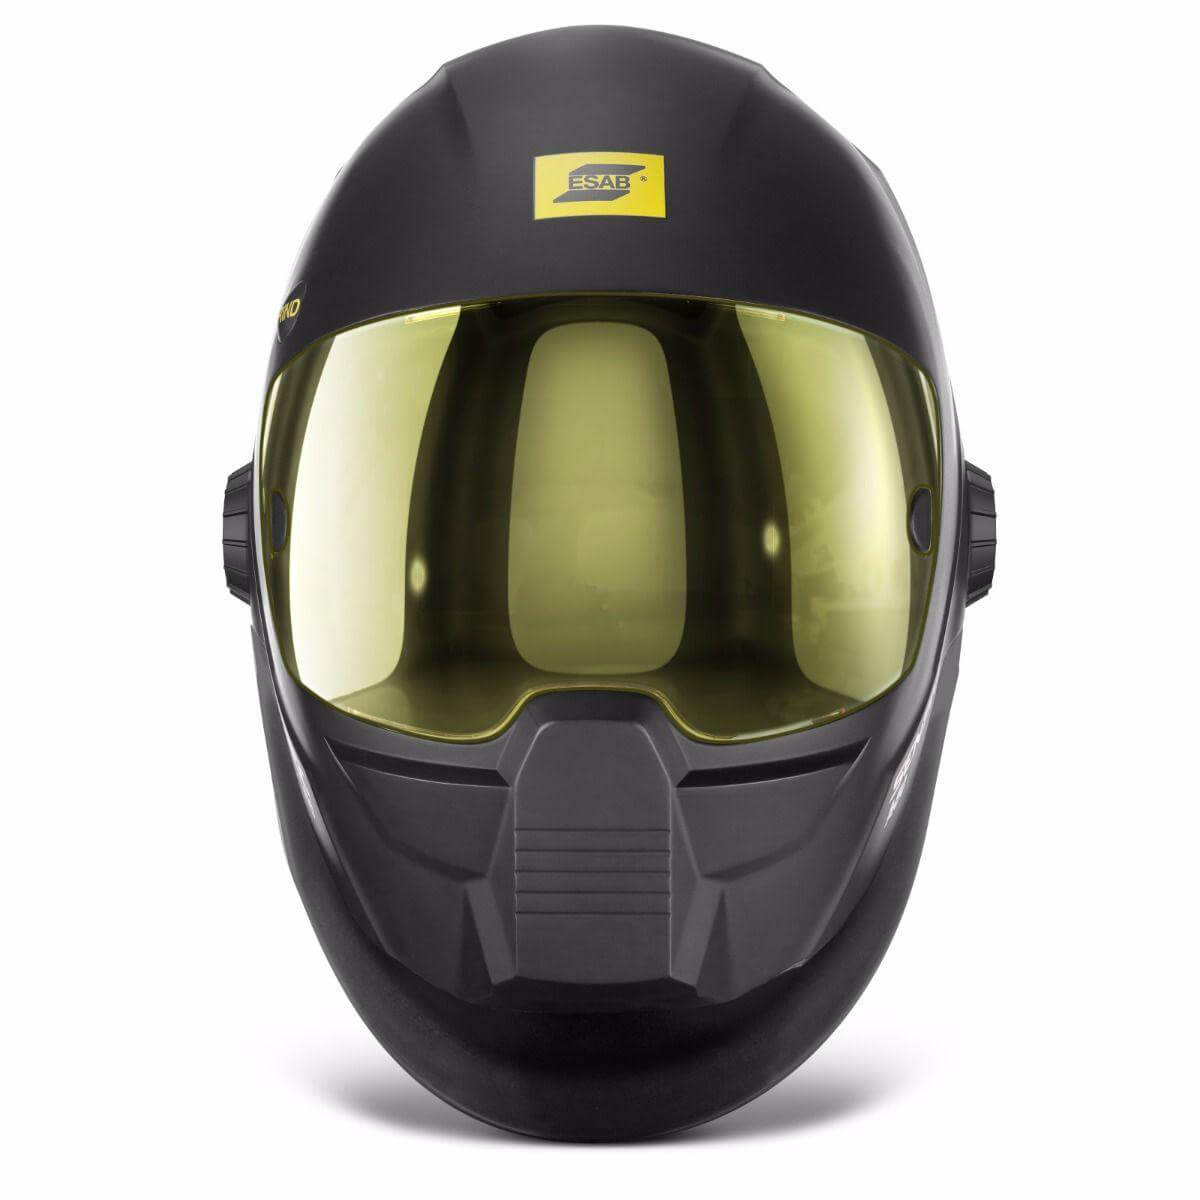 Esab Sentinal A50 Auto Darkening Welding Helmet Front